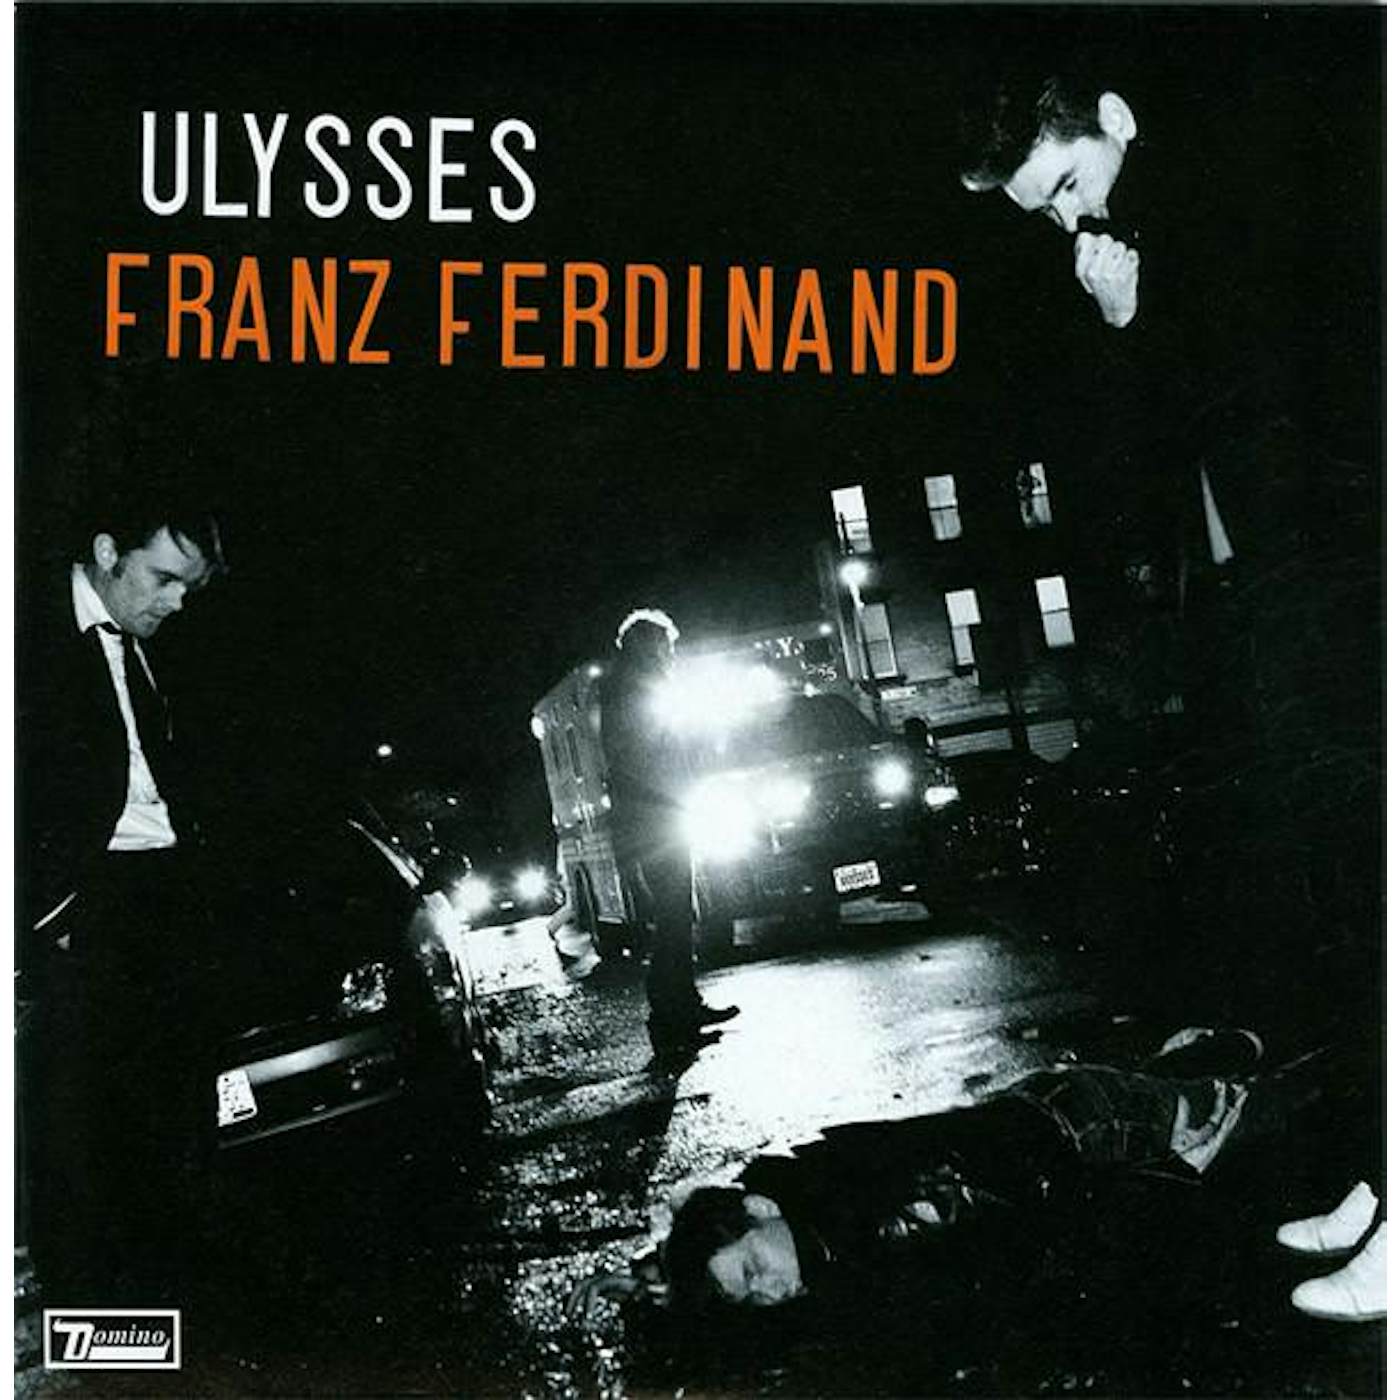 Franz Ferdinand ULYSSES (FRA) Vinyl Record